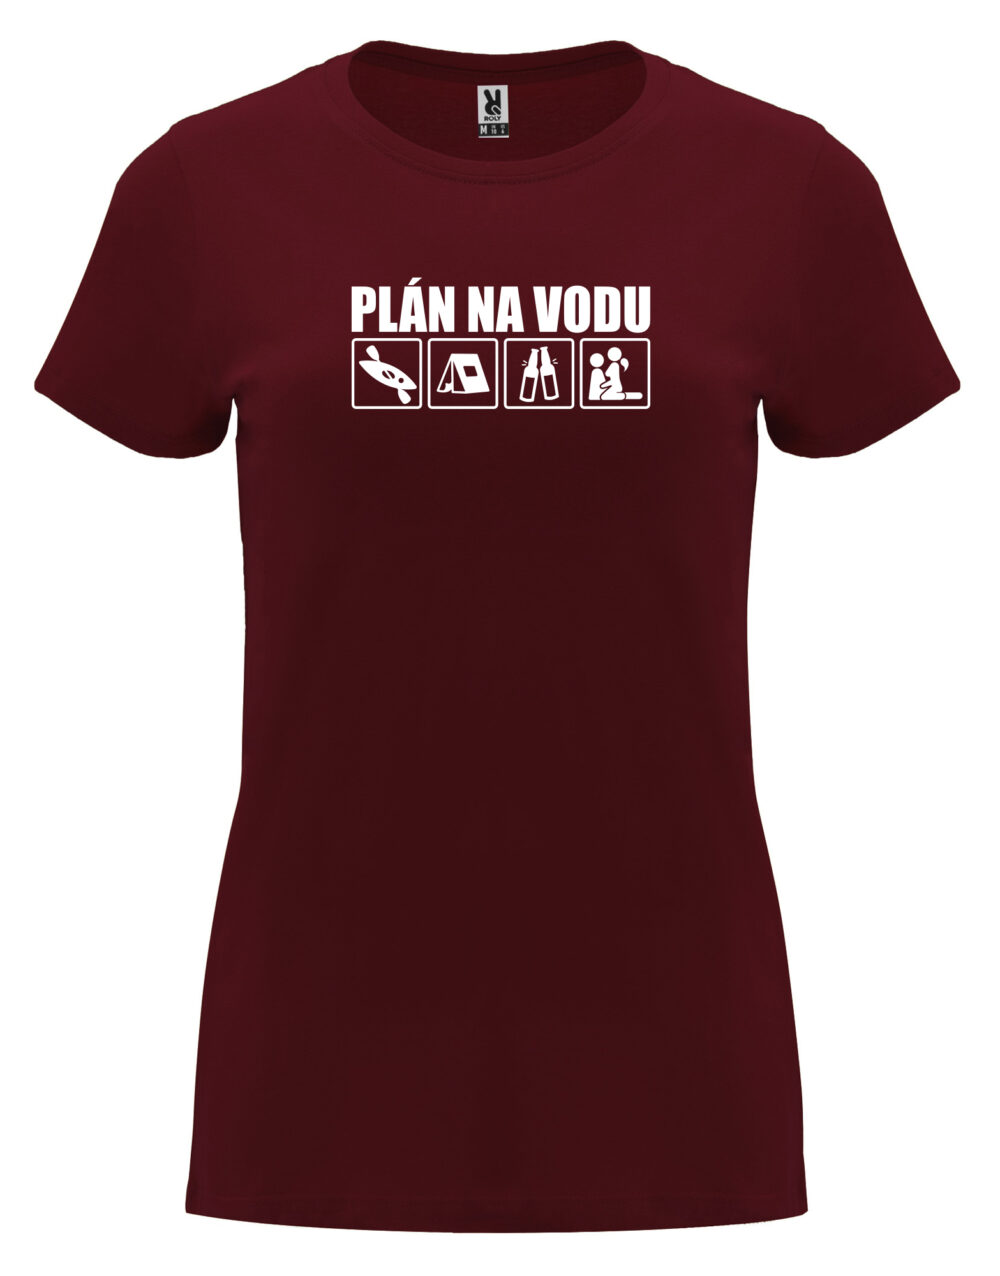 Dámské tričko s potiskem Plán na vodu granátová